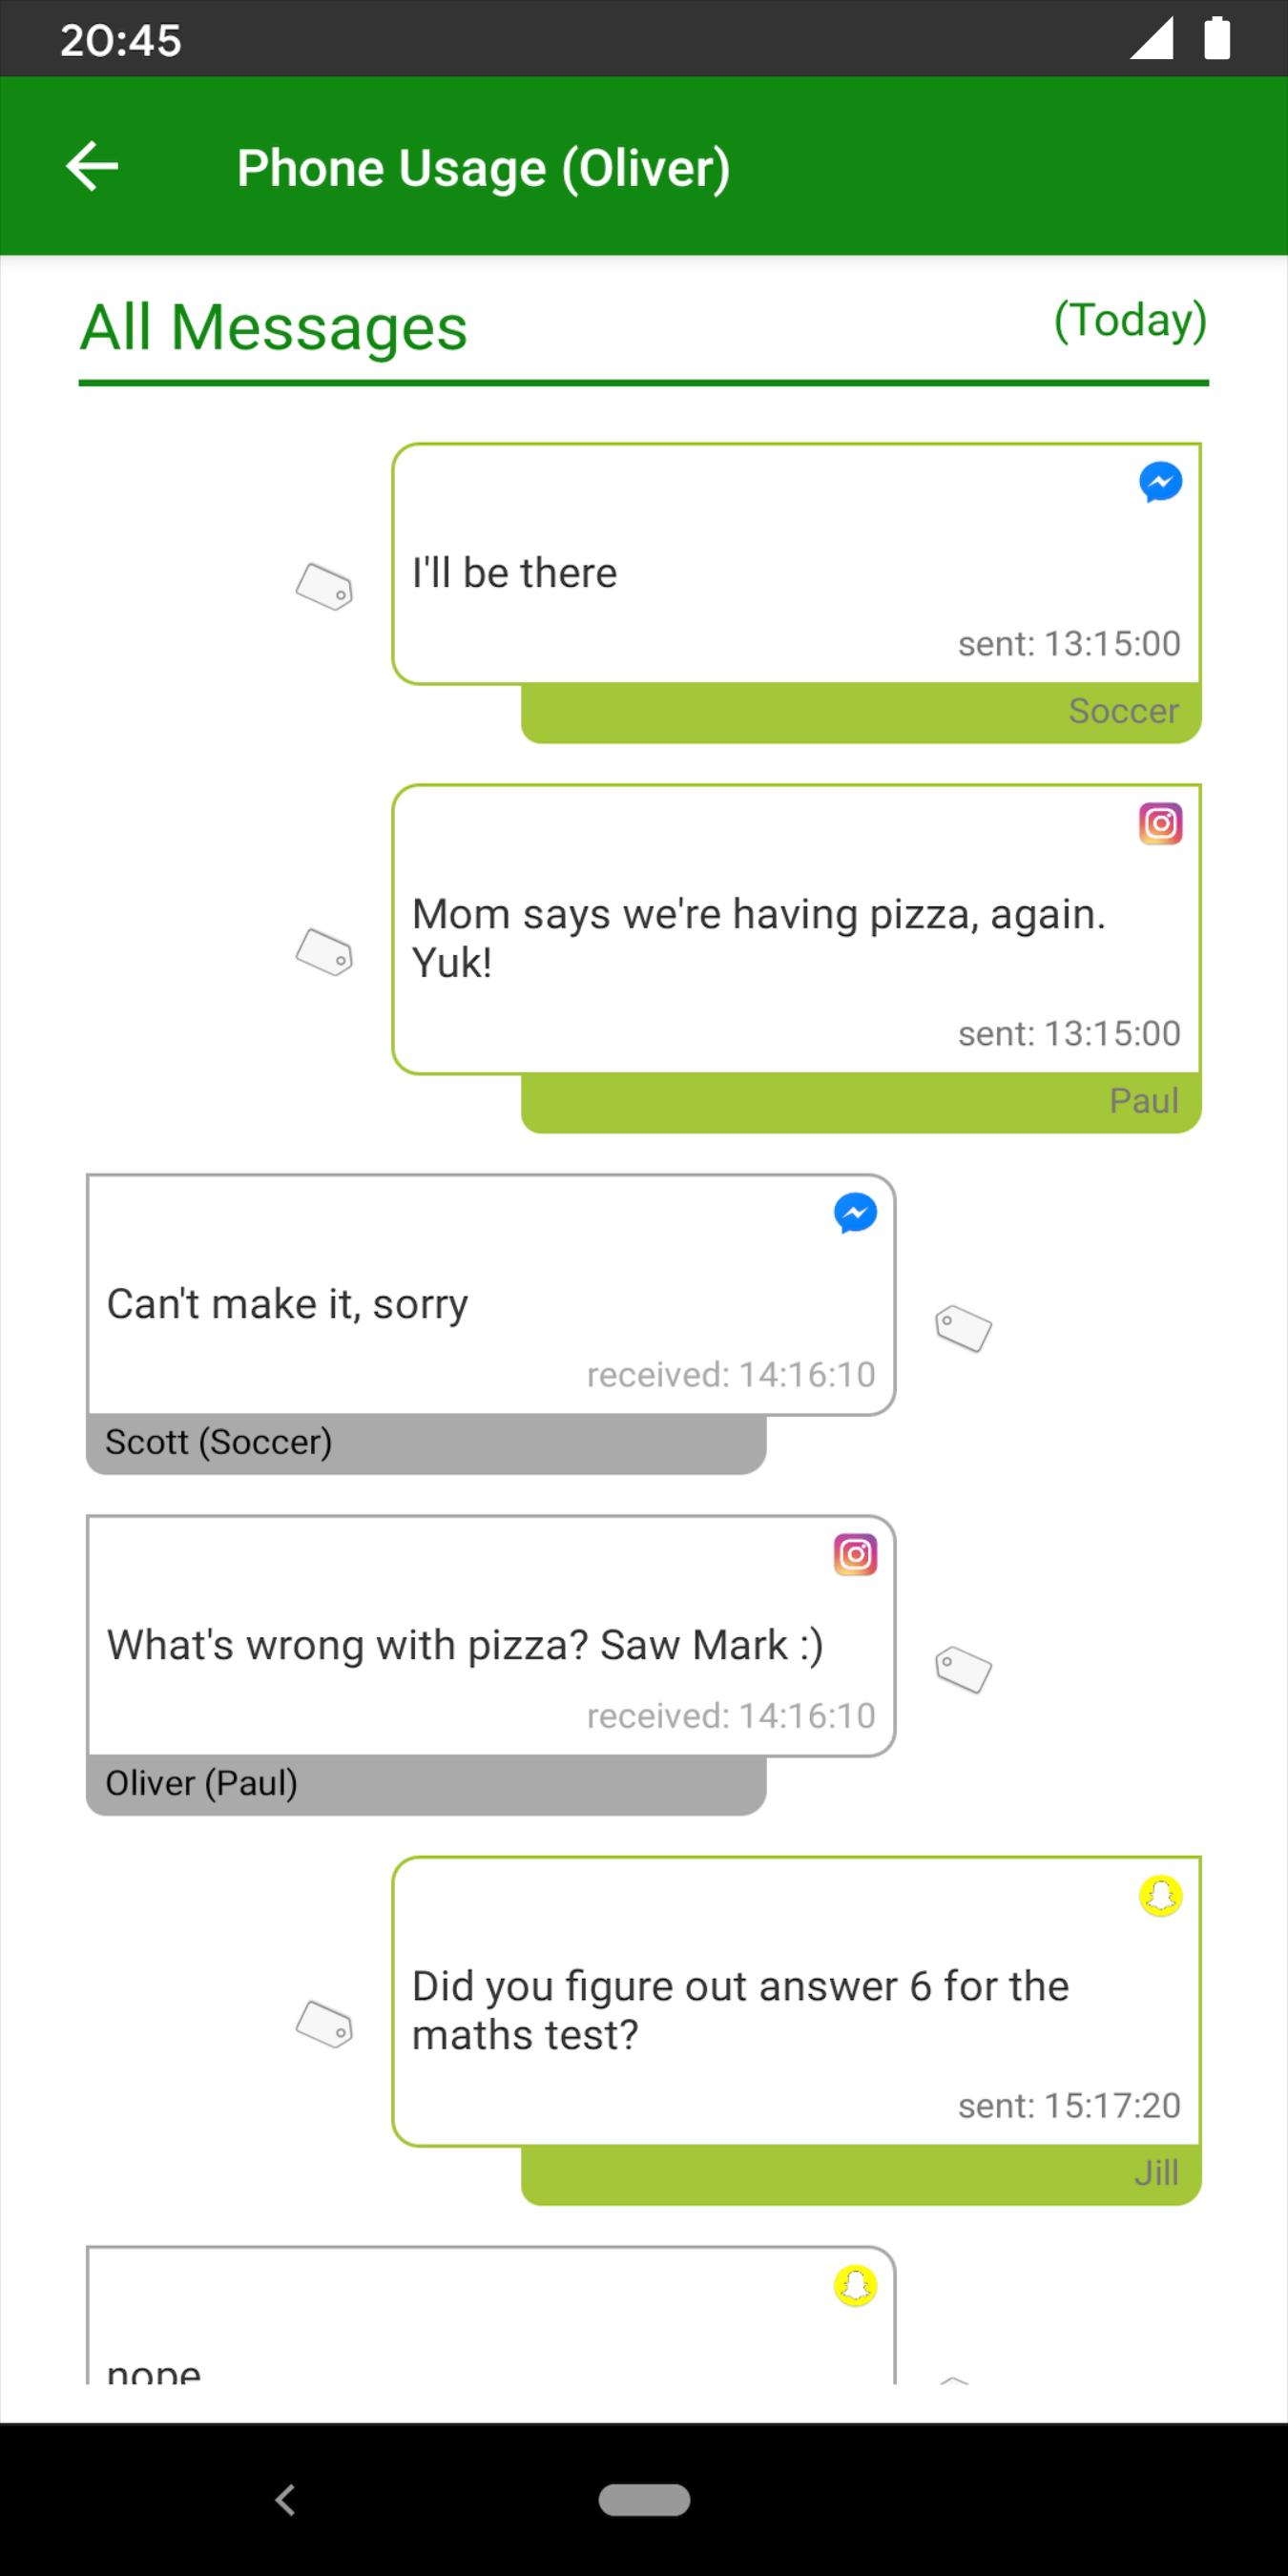 MMGuardian Parental Control App For Parent Phone 3.6.49 Screenshot 4